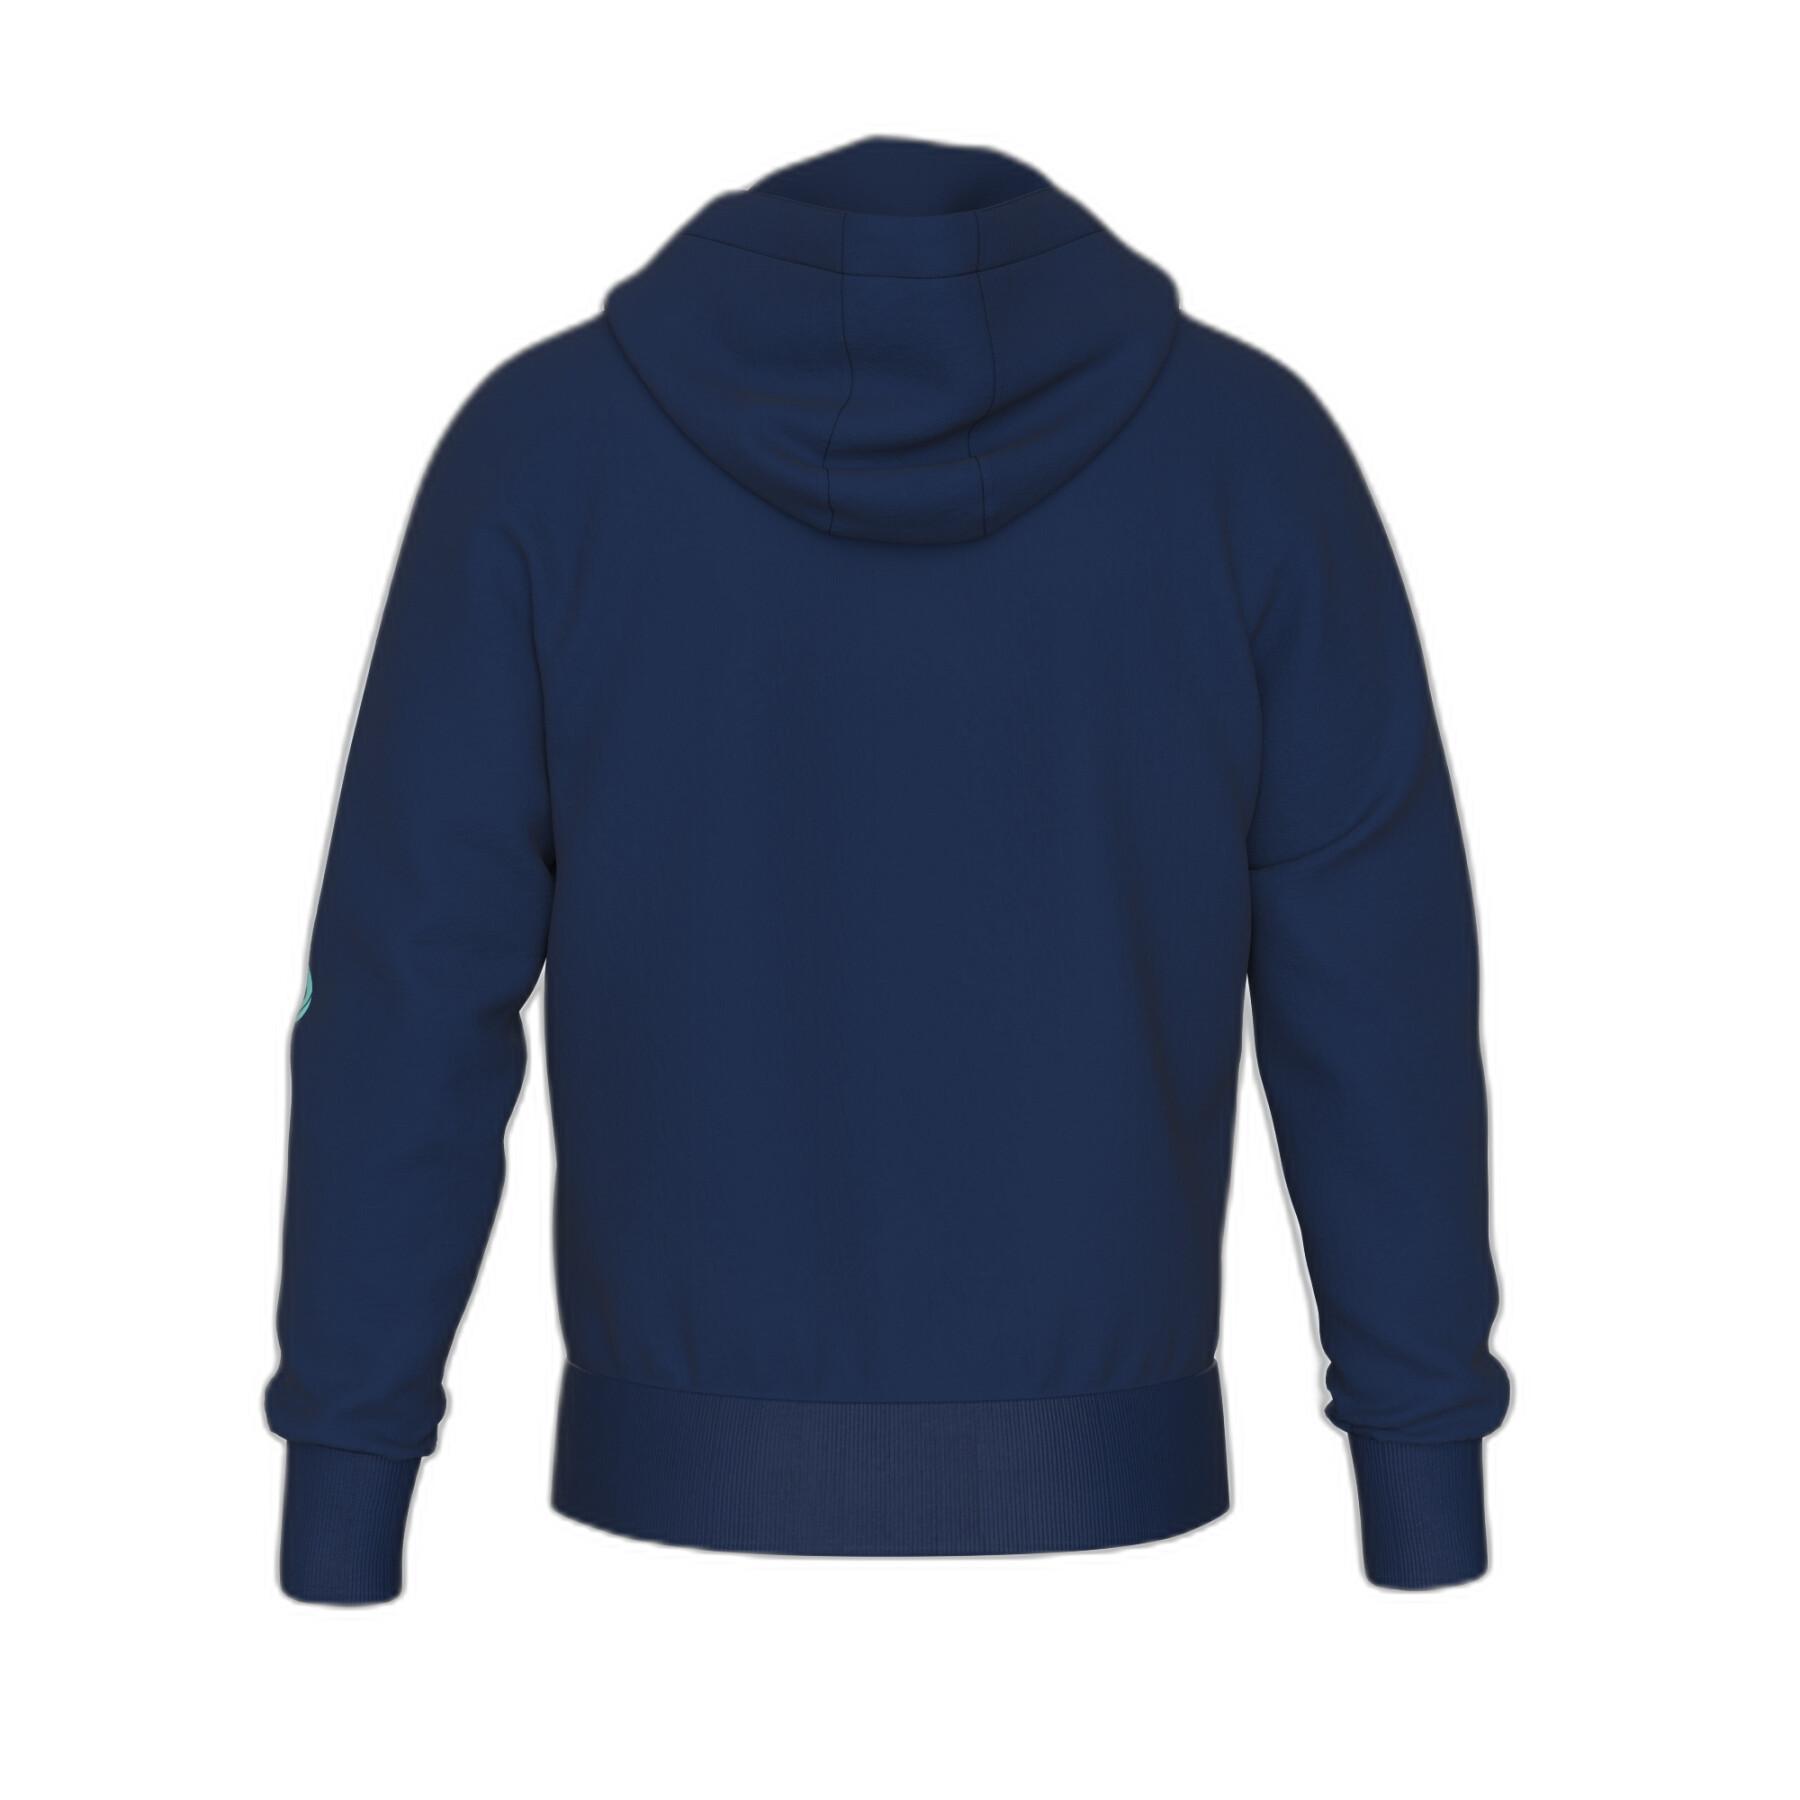 Hooded sweatshirt with zipper Errea Essential